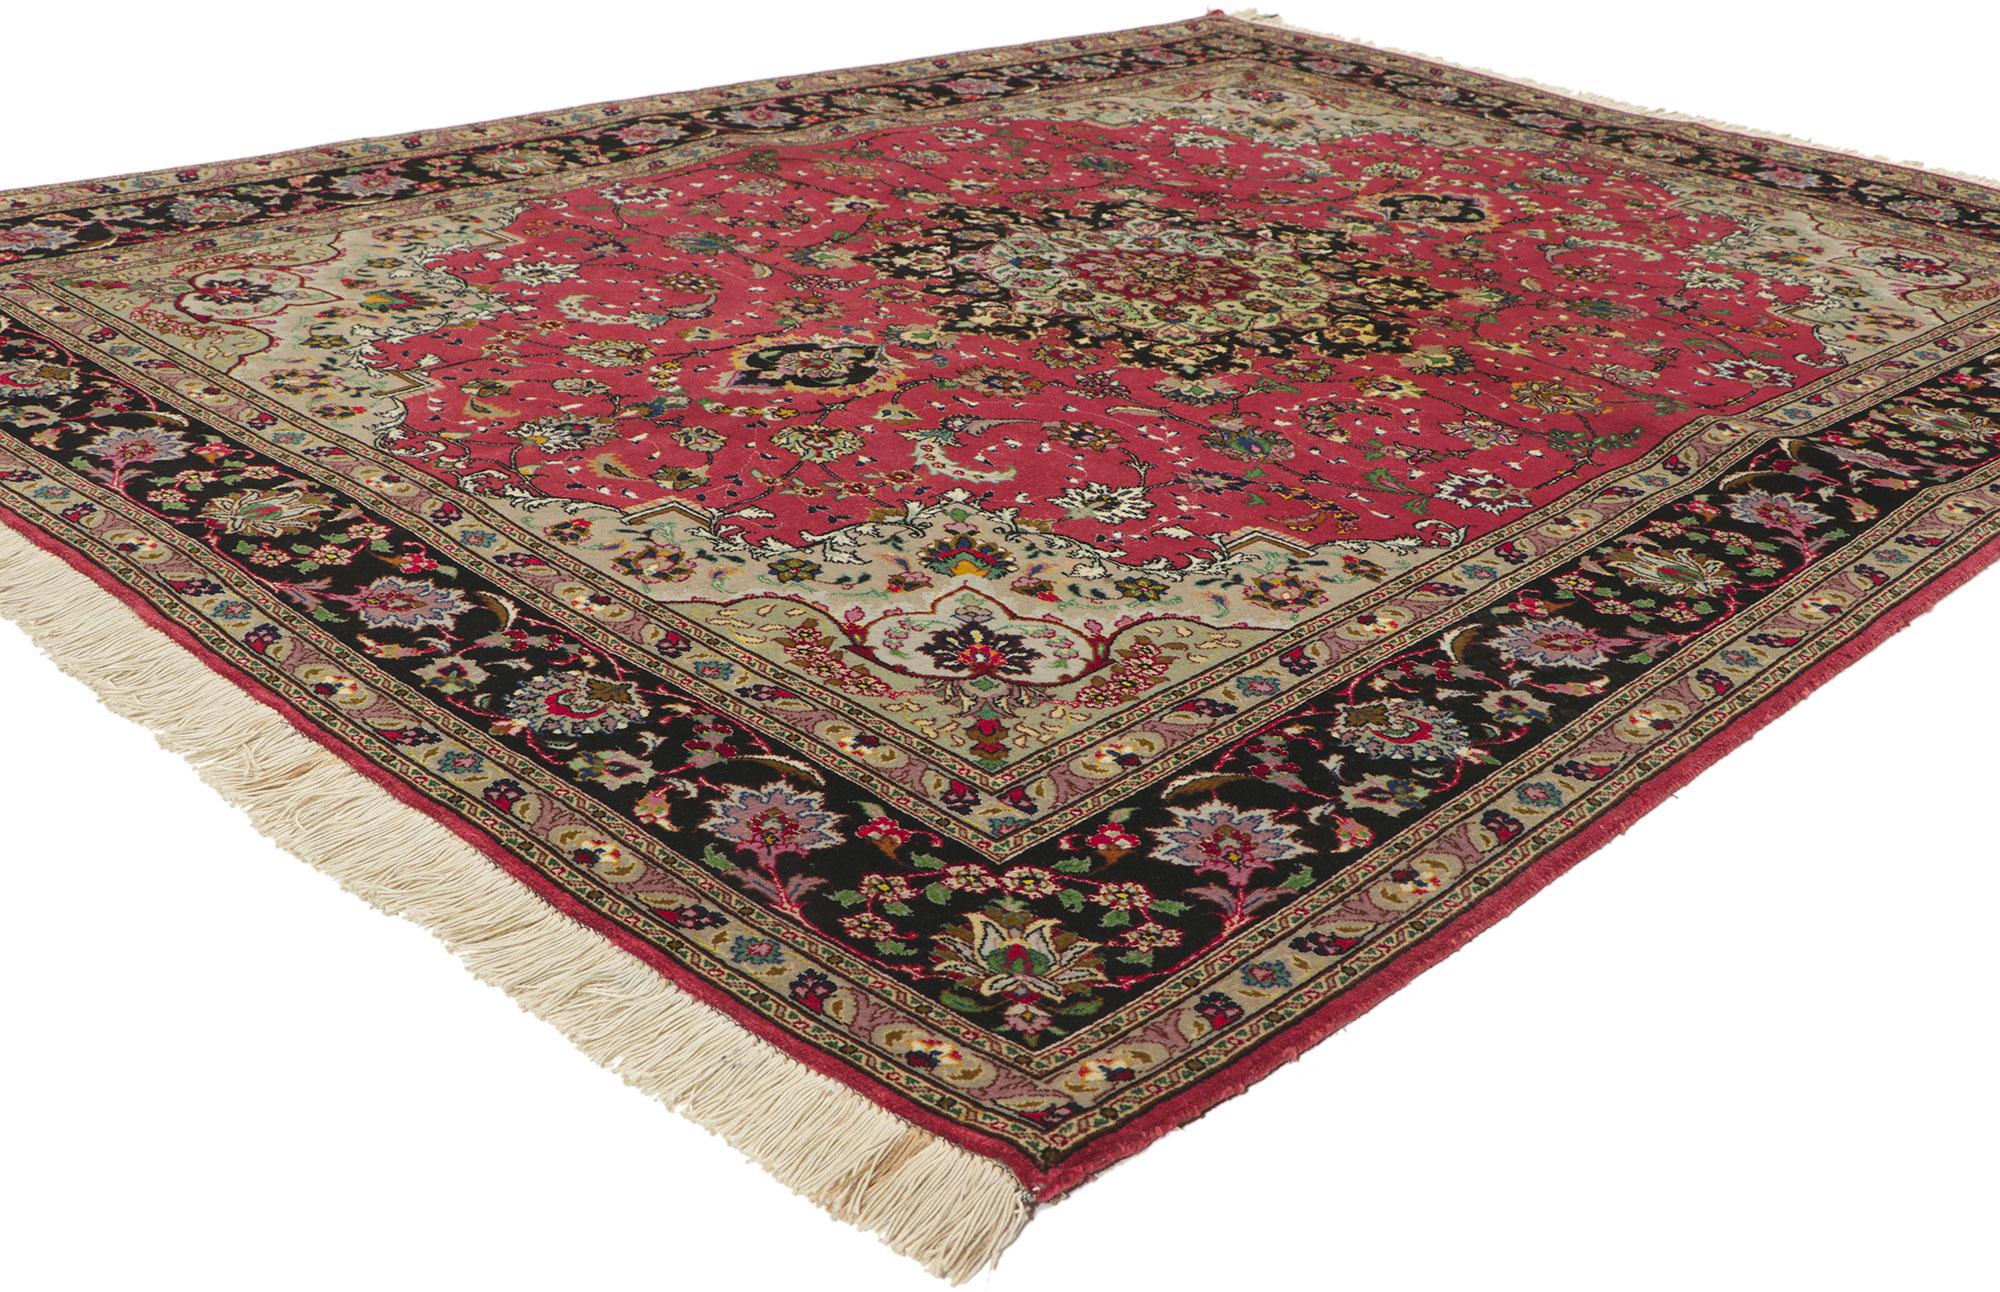 74399 Vintage Persian Silk Tabriz Rug, 04'11 X 06'06. 
Dieser handgeknüpfte persische Tabriz-Teppich aus Seide im Vintage-Stil beeindruckt sowohl durch seine lässige Eleganz als auch durch seine Frische und Form. Die kräftigen Farben vermitteln ein